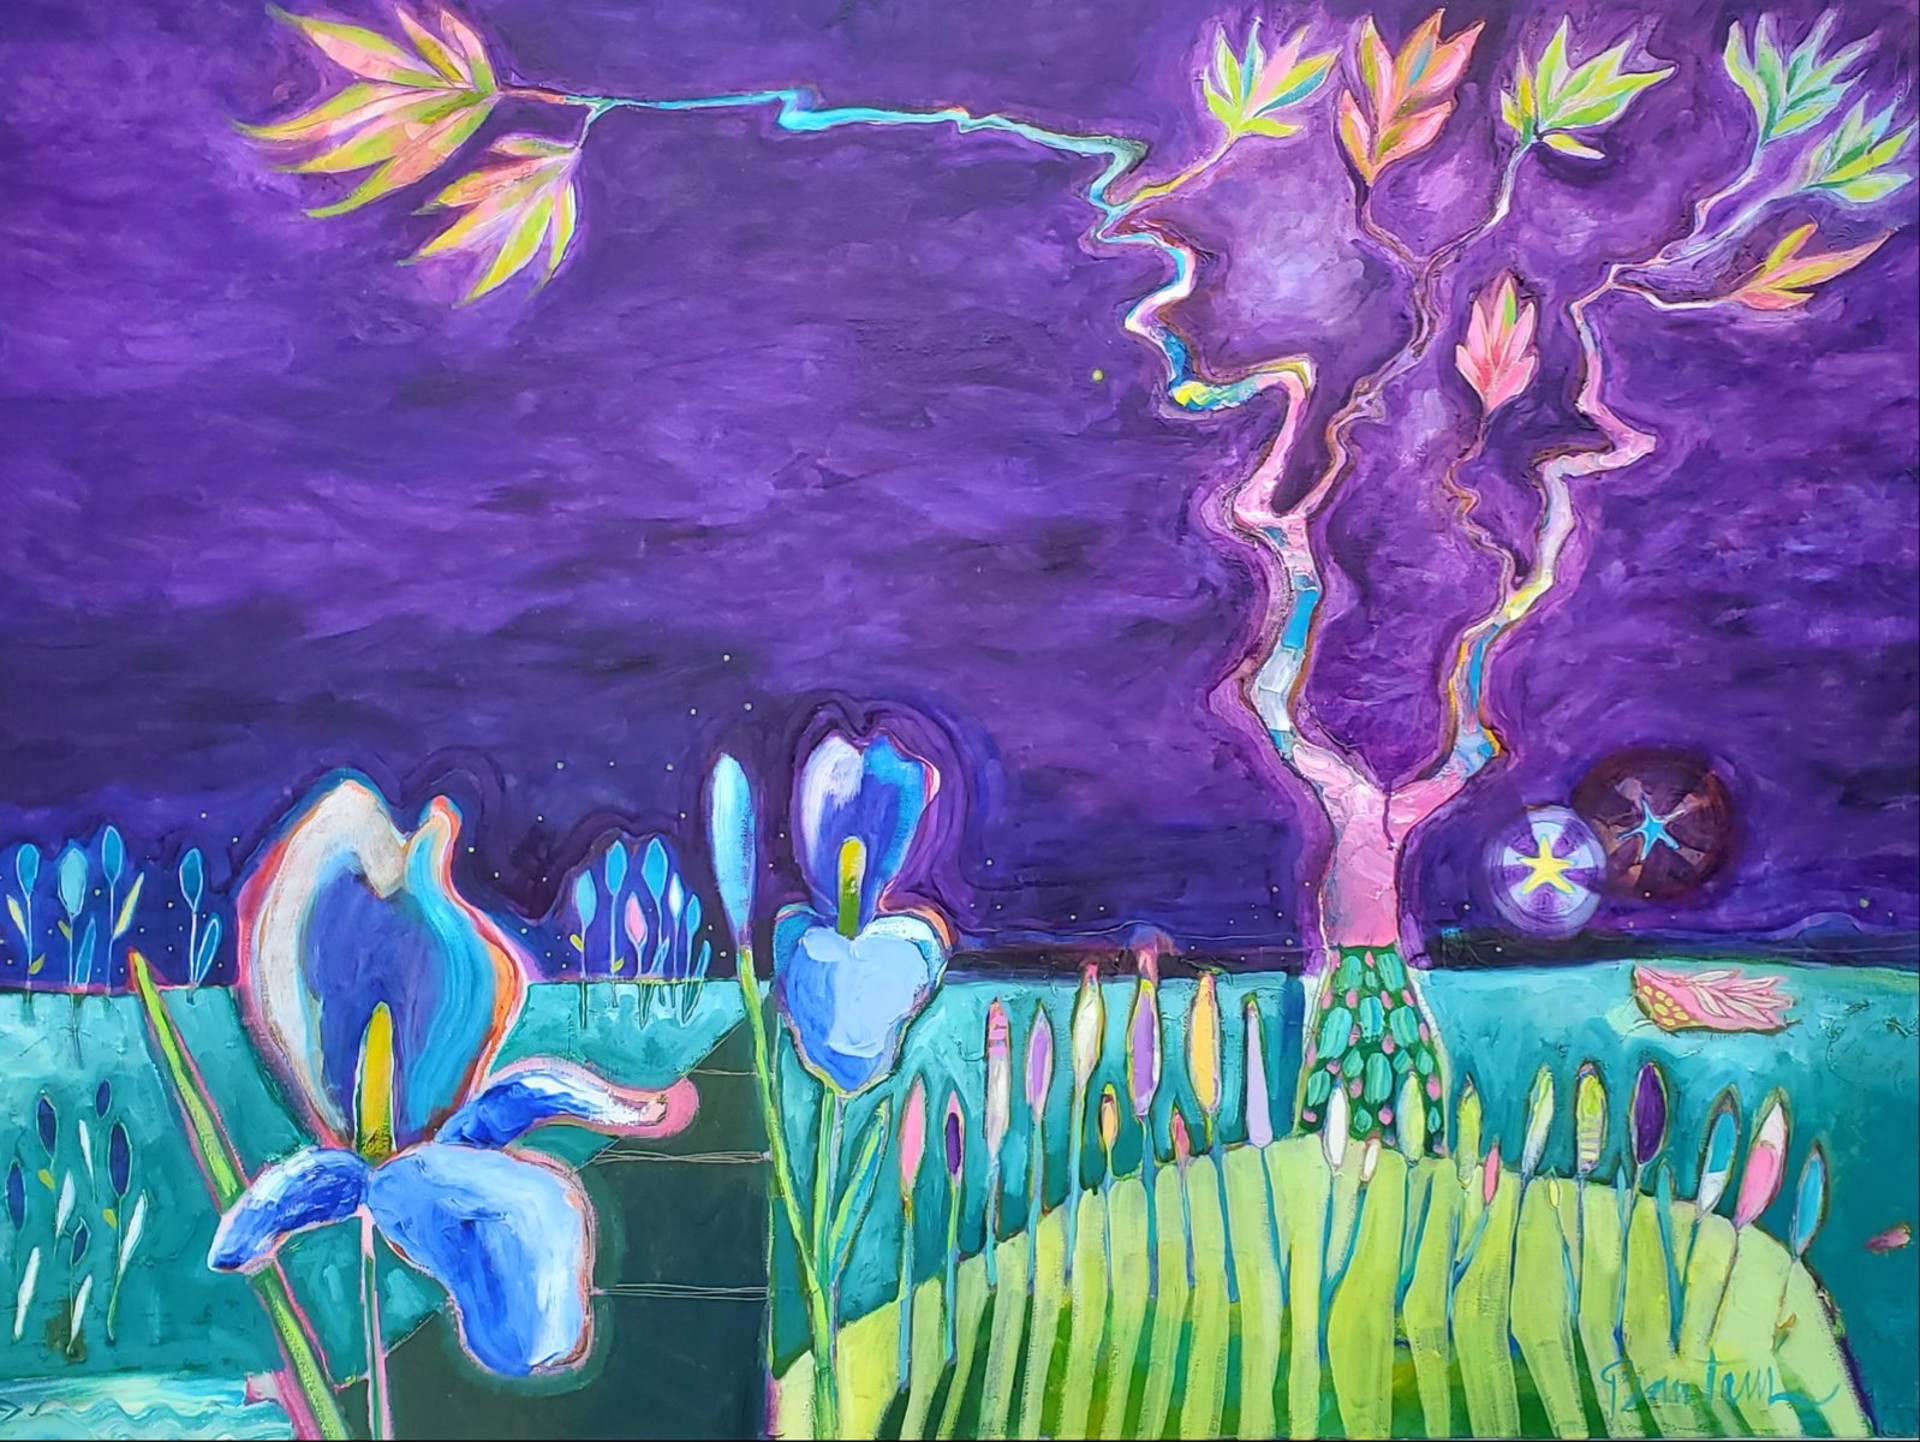 My Mother’s Purple Iris Garden by Wendy Bantam